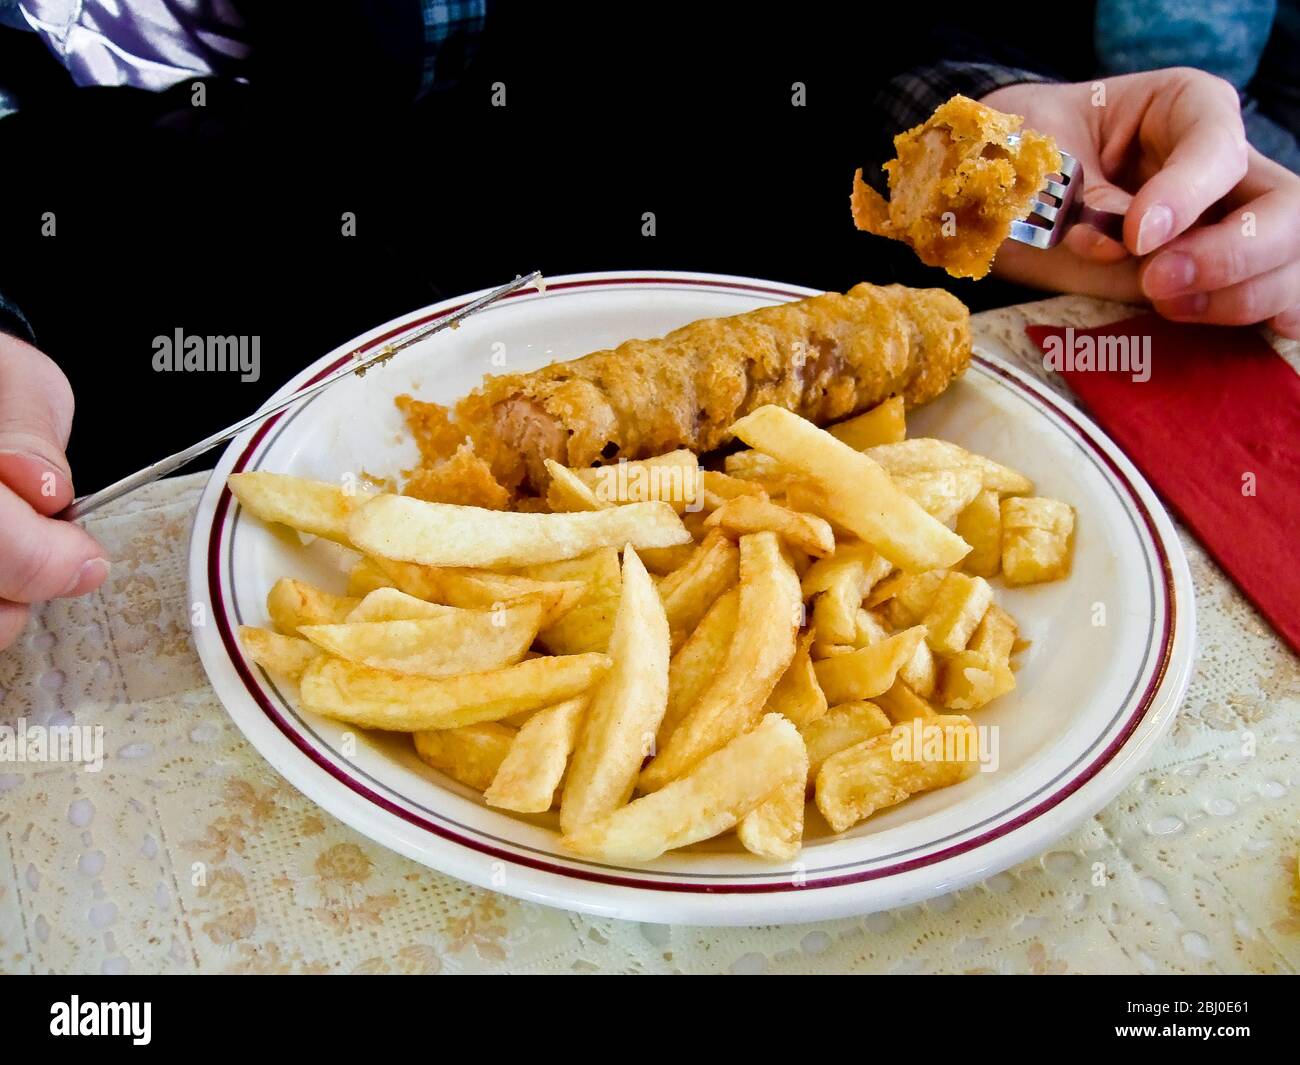 Frittiert, zerschlagen, Wurst und Chips, gegessen in englischen Café - Stockfoto